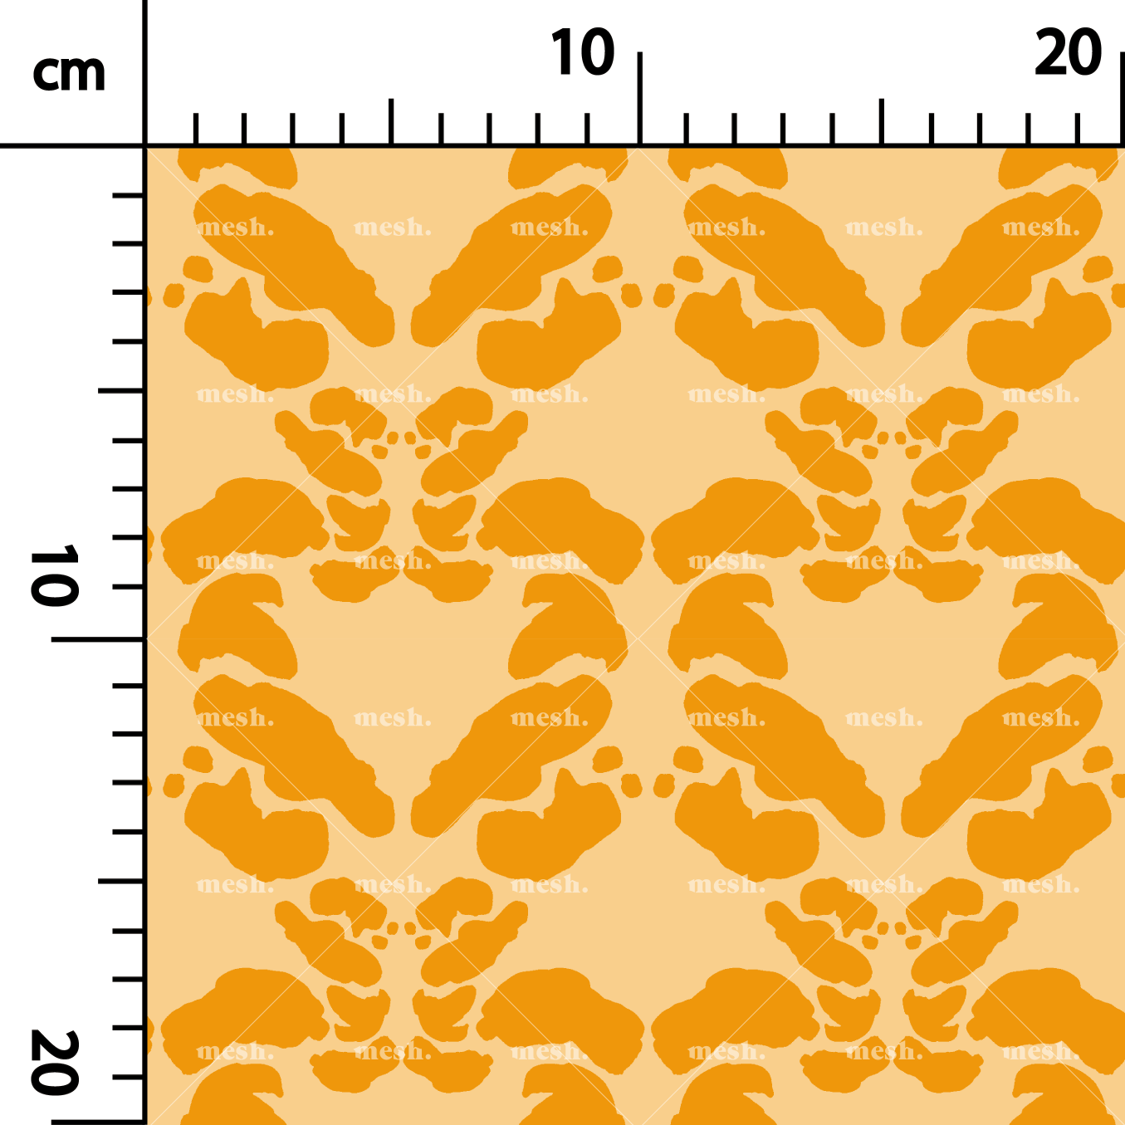 399. Symmetry decor in orange on orange